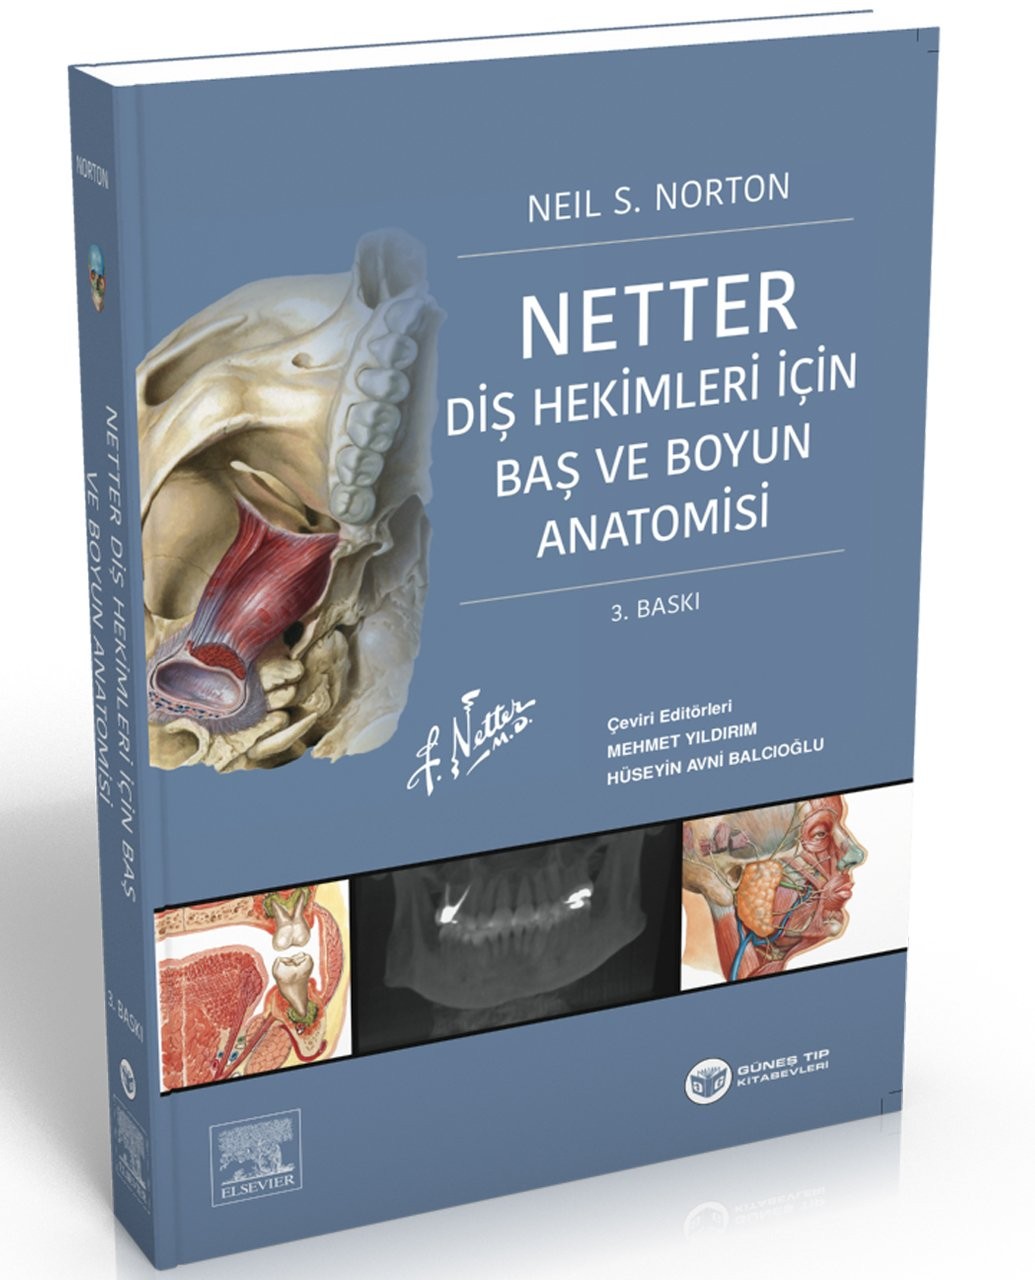 Netter Diş Hekimleri için Baş ve Boyun Anatomisi - NOBEL Kitabevi